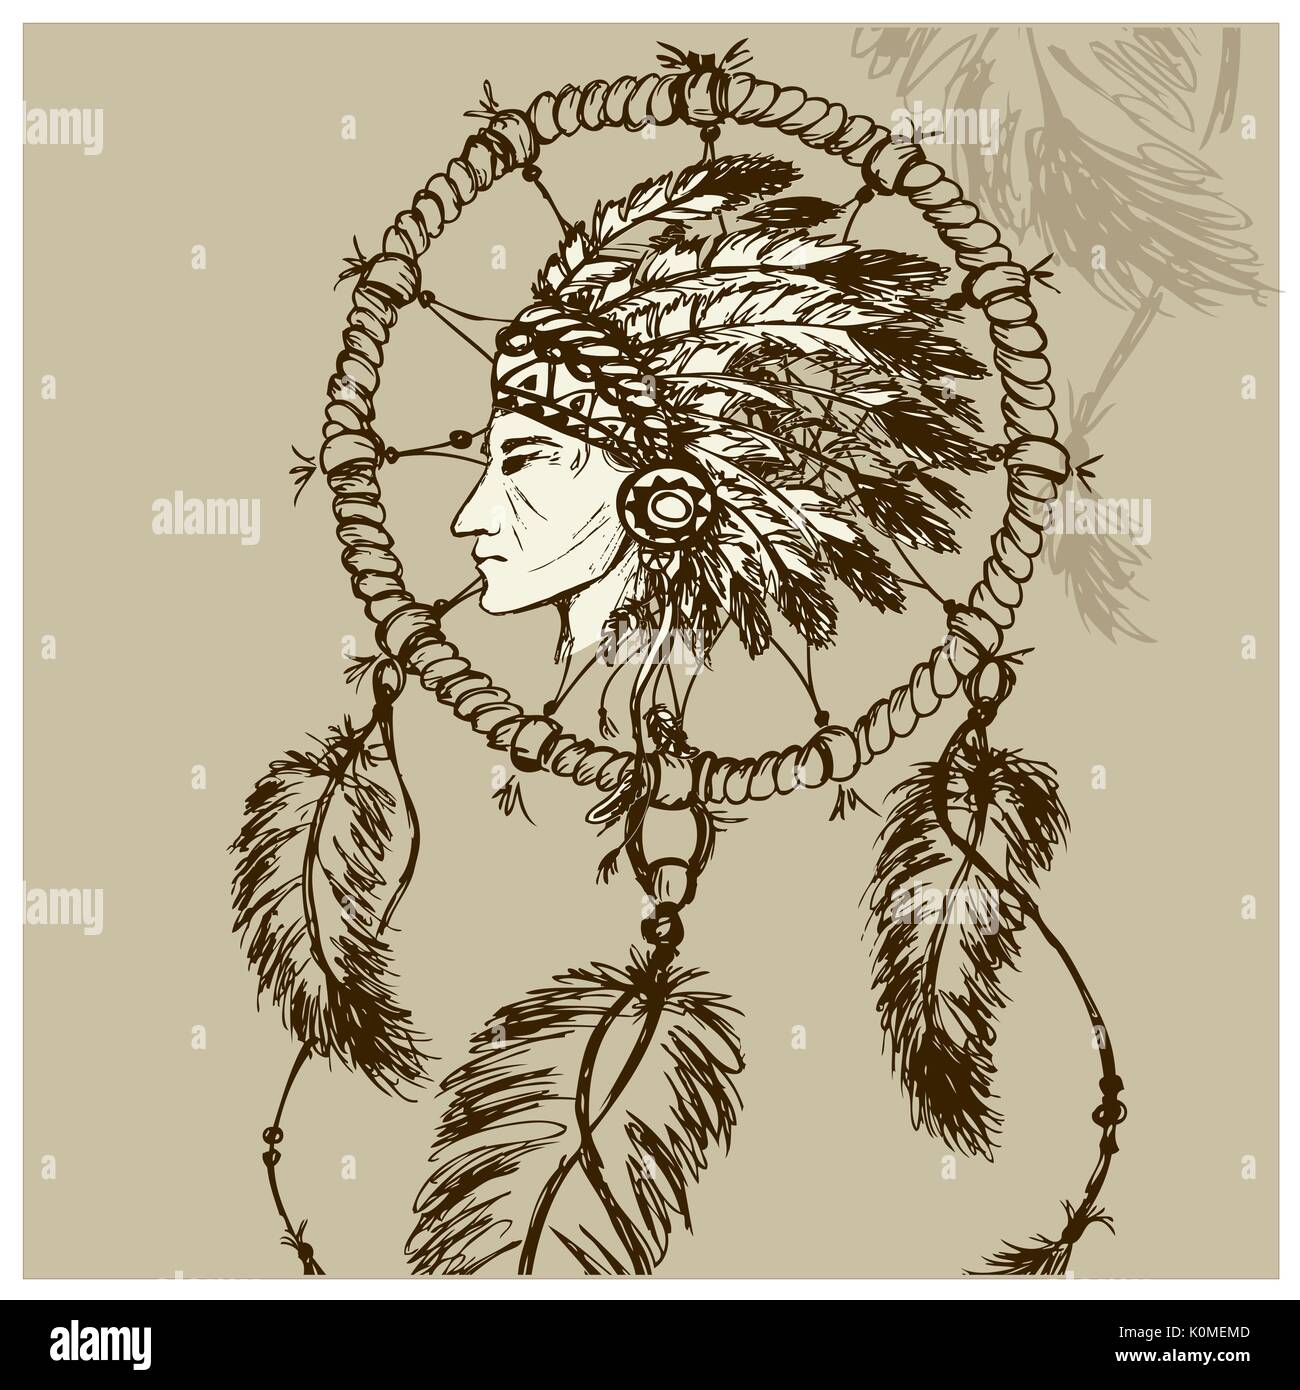 Nordamerikanischen Indianer mit Dreamcatcher, Hand gezeichnet Vektor Stock Vektor